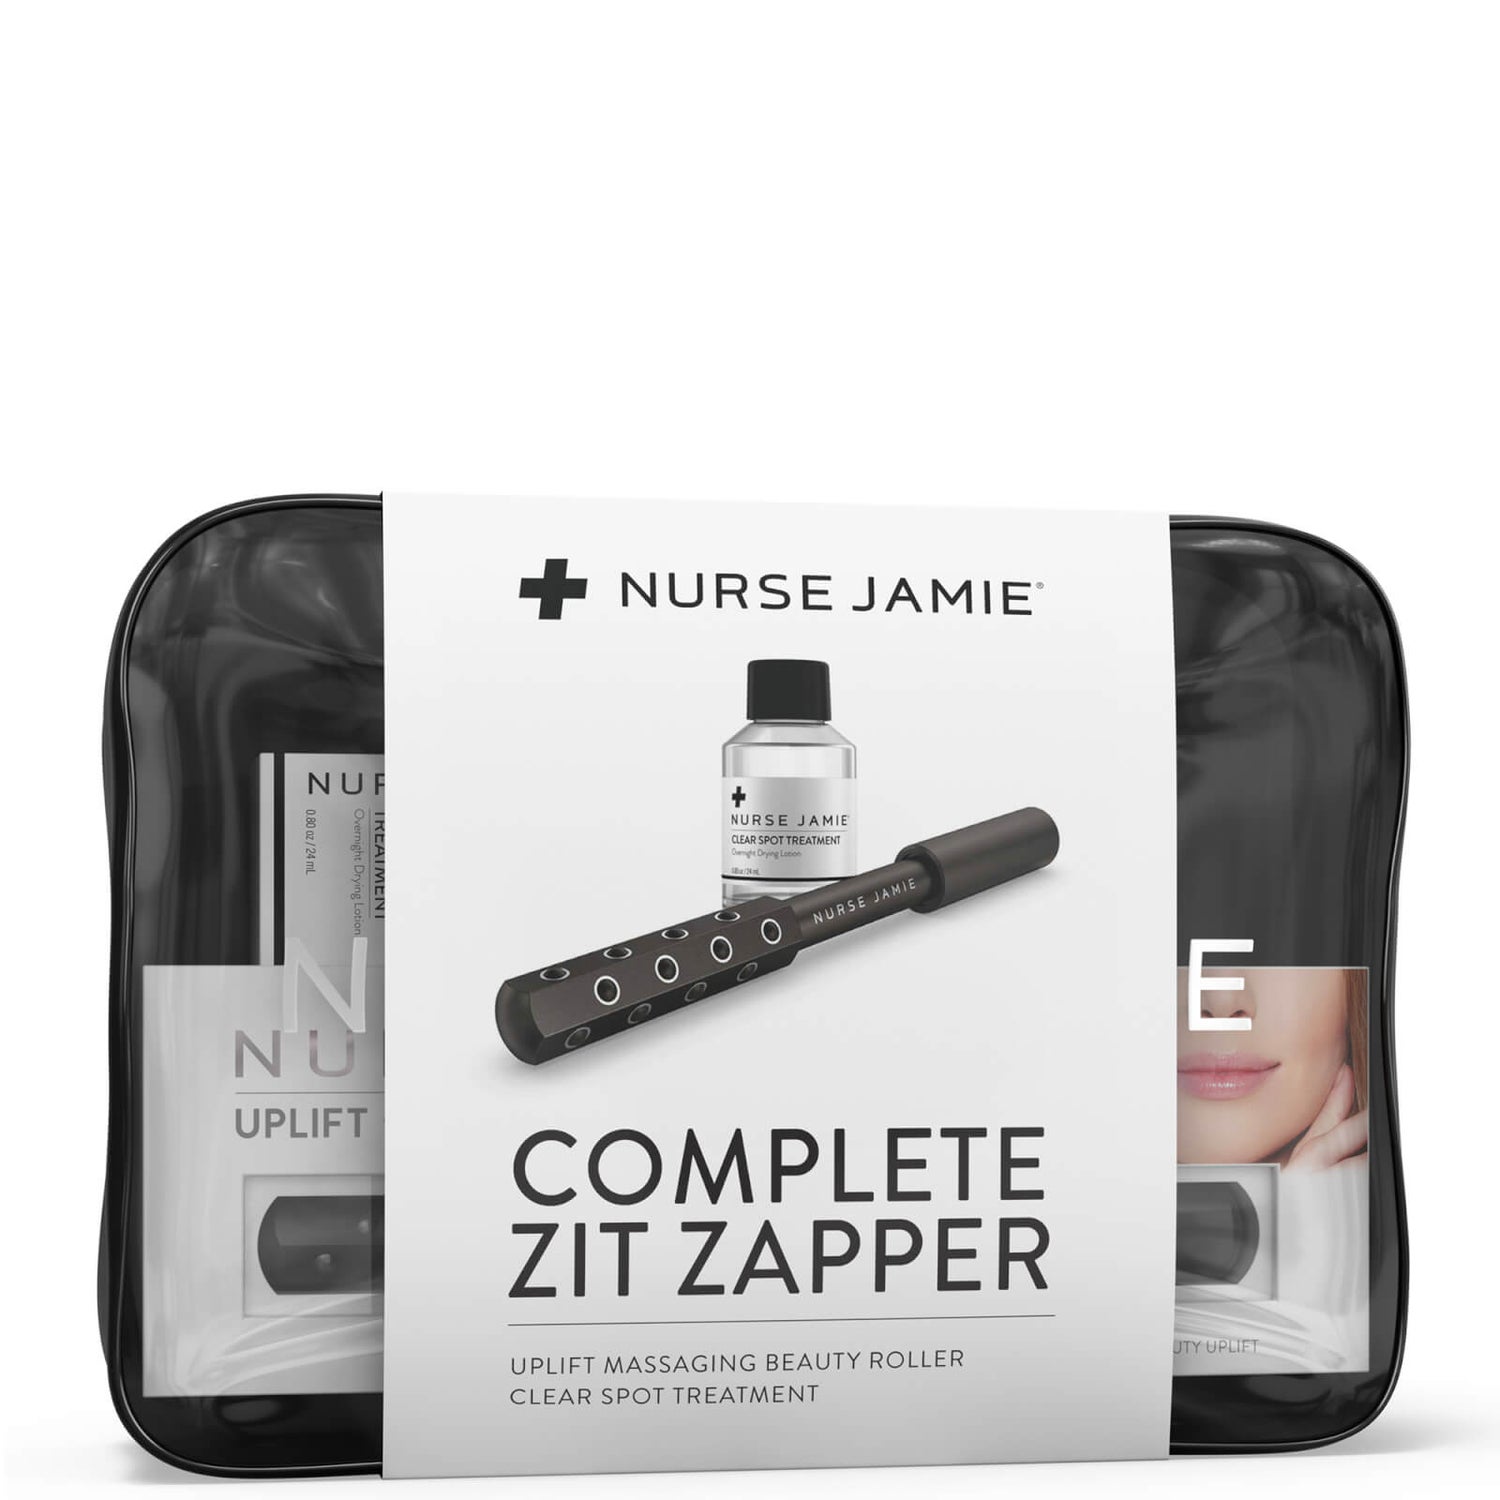 Nurse Jamie Complete Zit Zapper